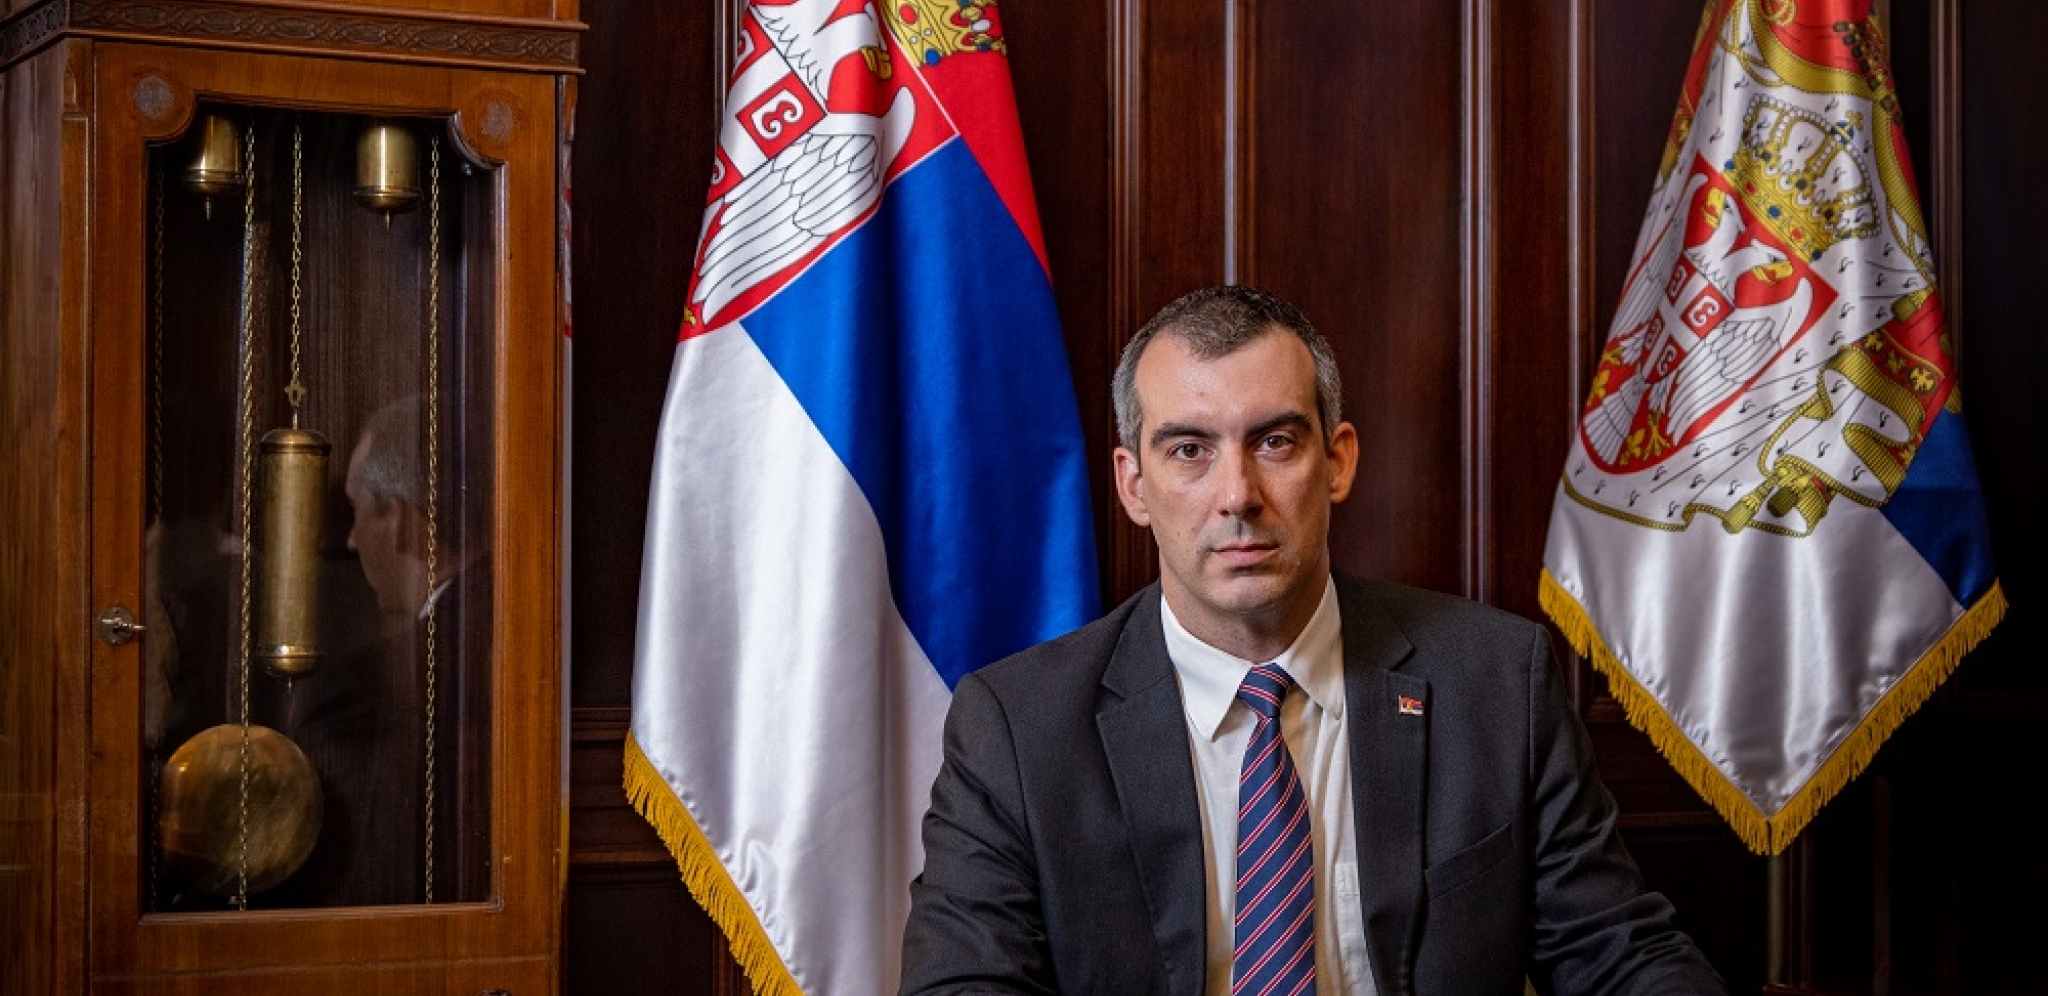 ORLIĆ POSLAO JASNU PORUKU "Srbija danas stoji uz svog predsedniкa složno i odlučno"